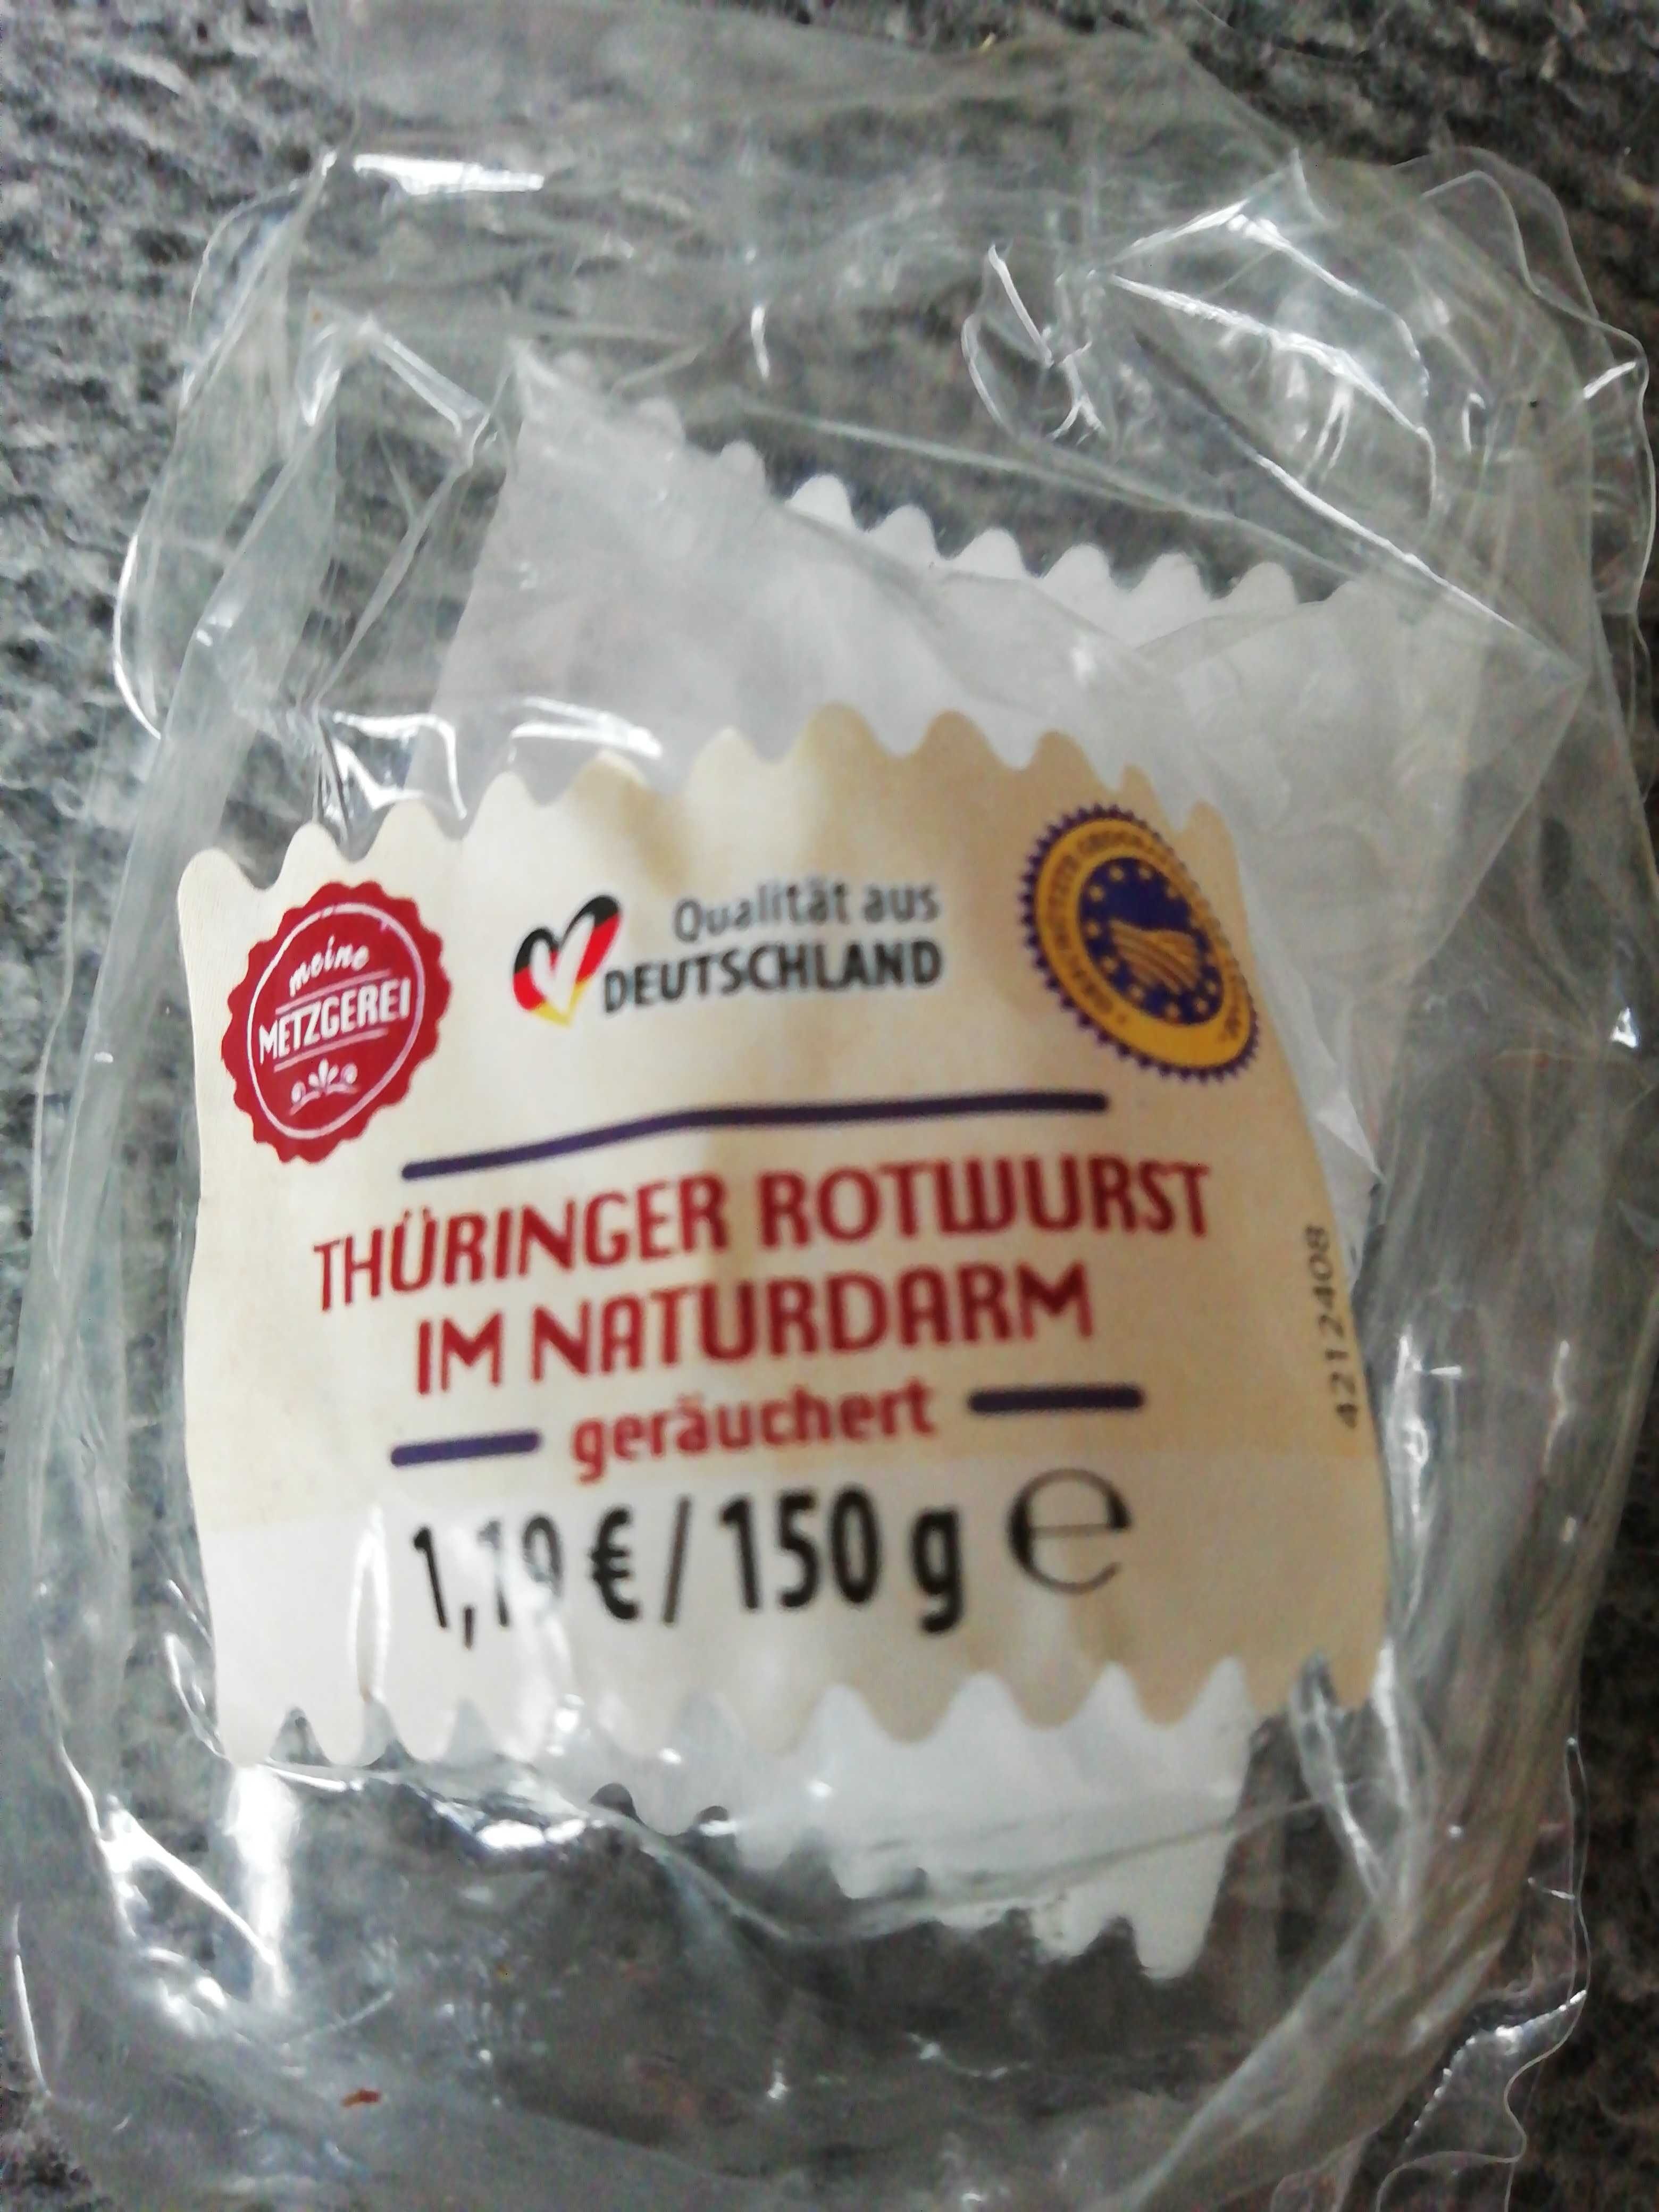 Thüringer Rotwurst im Naturdarm, geräuchert - Produkt - en